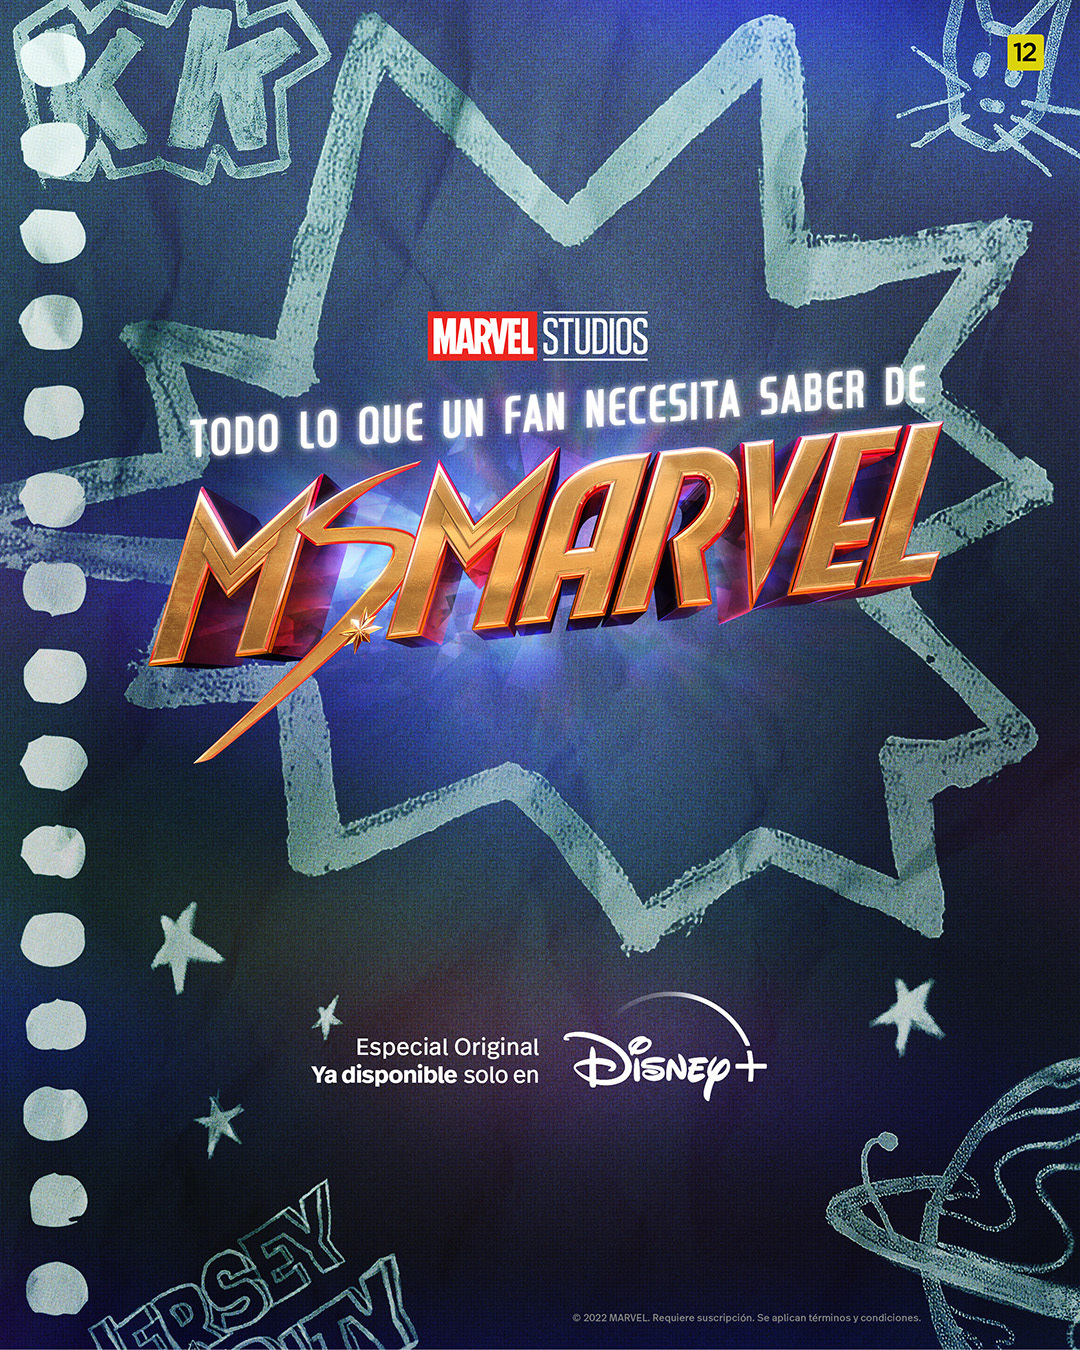 'Todo lo que un fan necesita saber de Ms. Marvel' ya disponible en Disney +